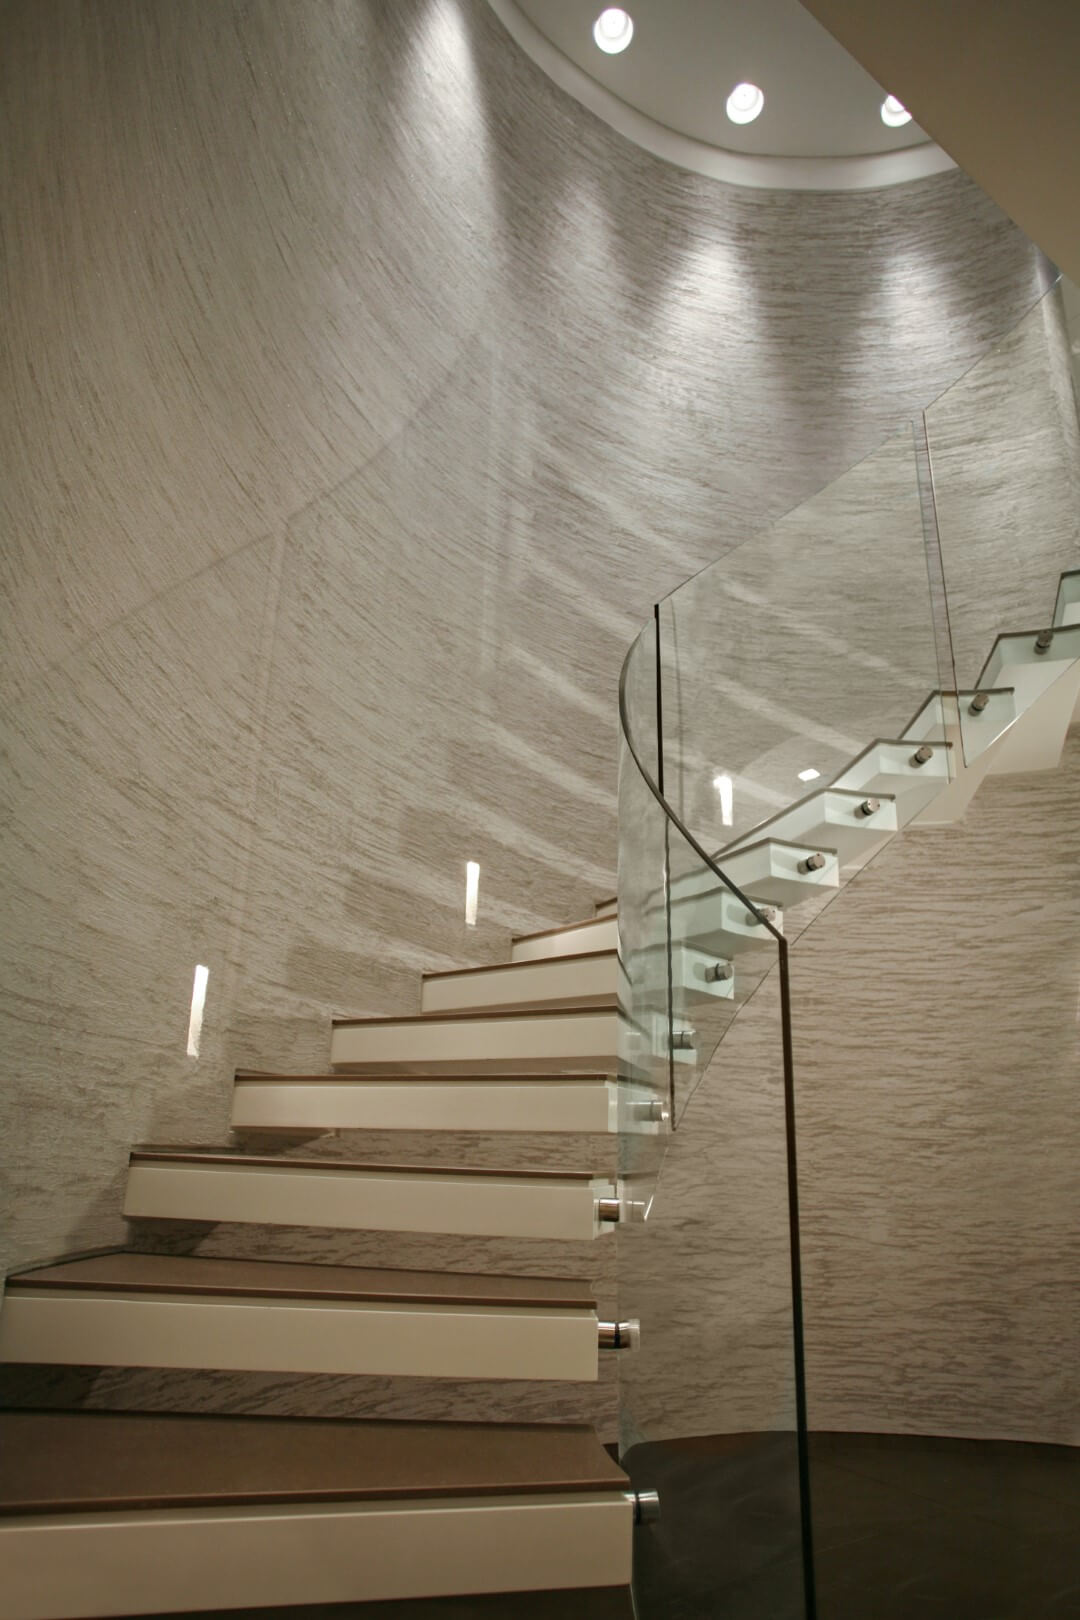 מדרגות ספירליות מקוריאן עם מעקה ספירלי מזכוכית עולות לקומה השניה לאורך הקיר